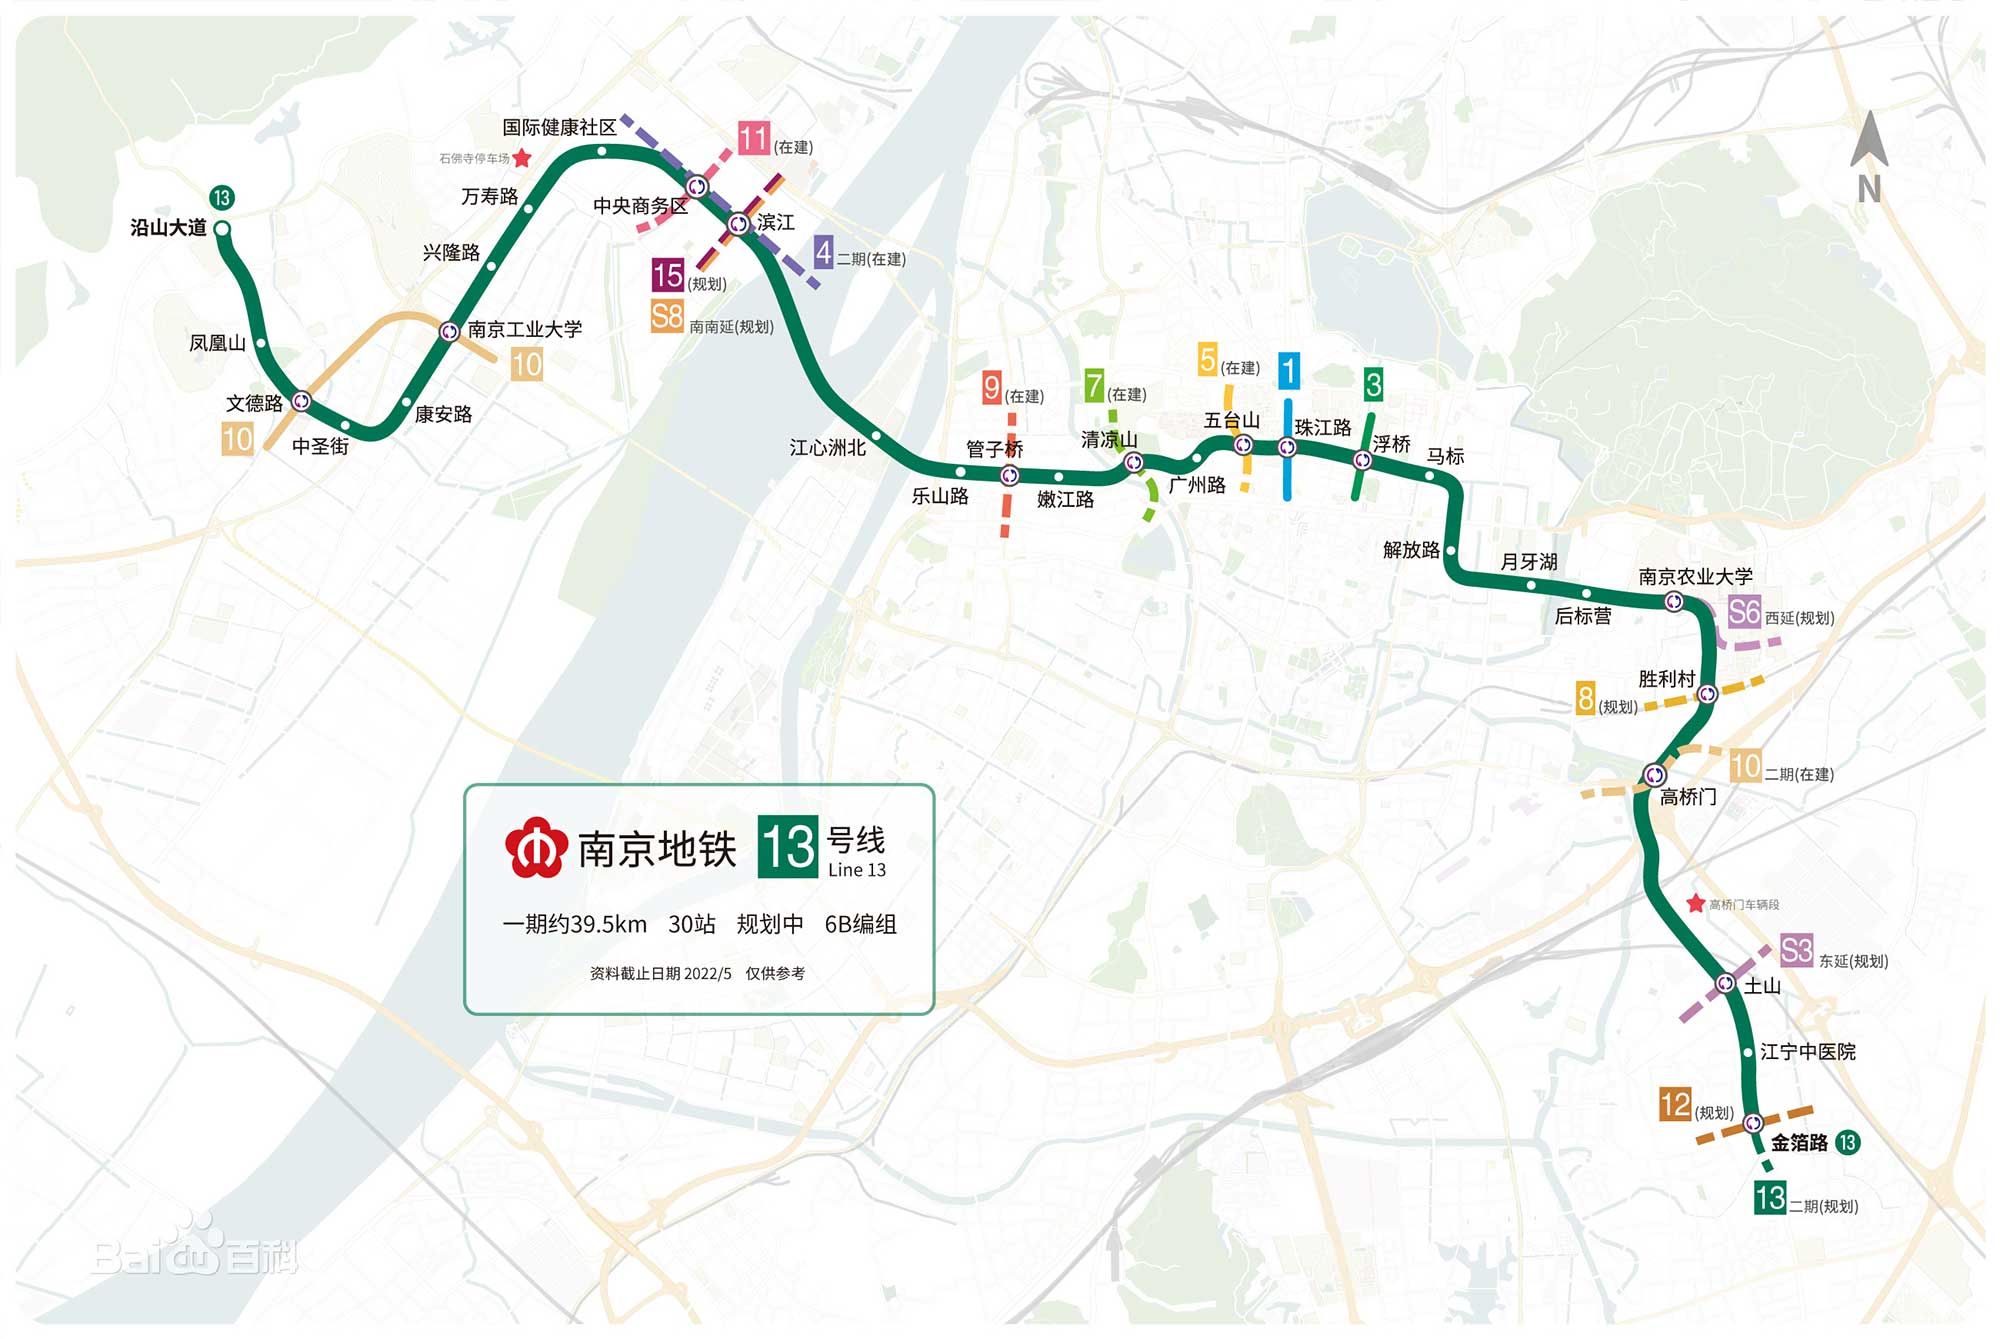 南京地铁线路规划图图片展示_南京地铁线路规划图相关图片下载